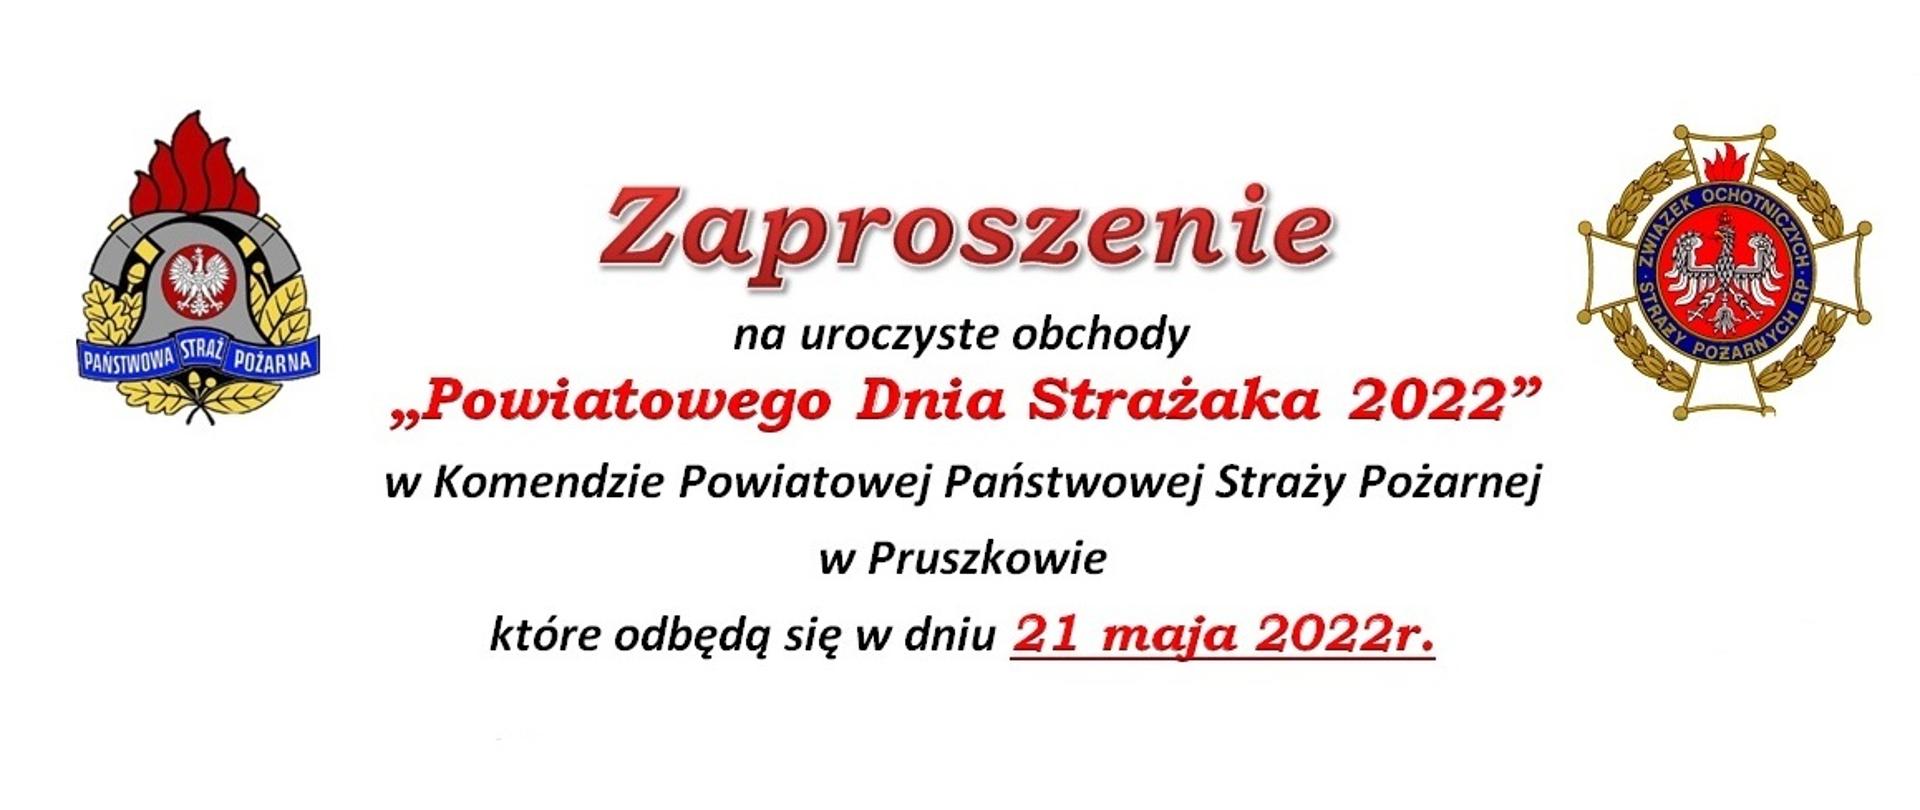 Powiatowy Dzień Strażaka 2022 strona tytułowa.